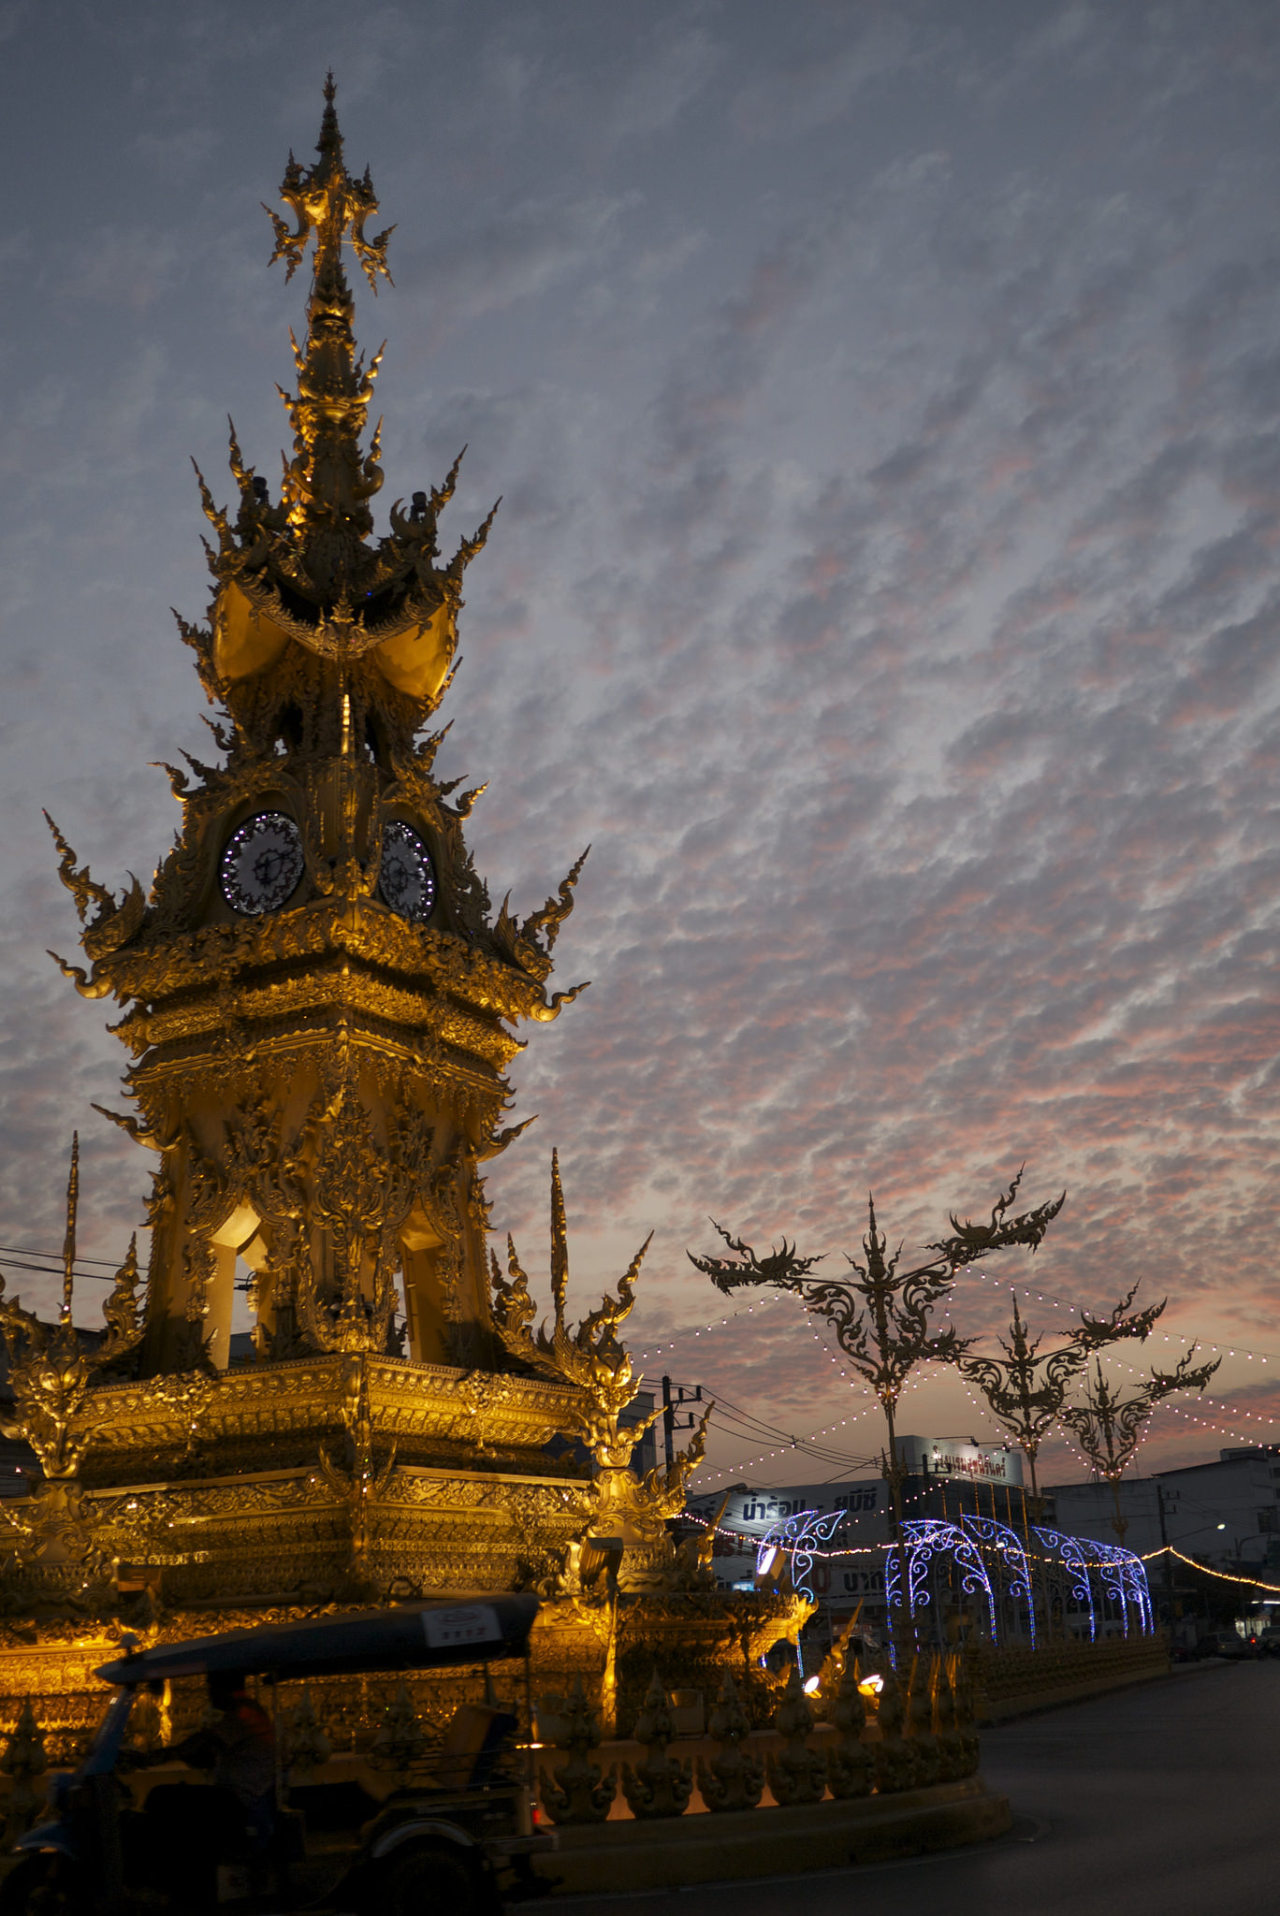 Chiang Rai at dusk / Thailand